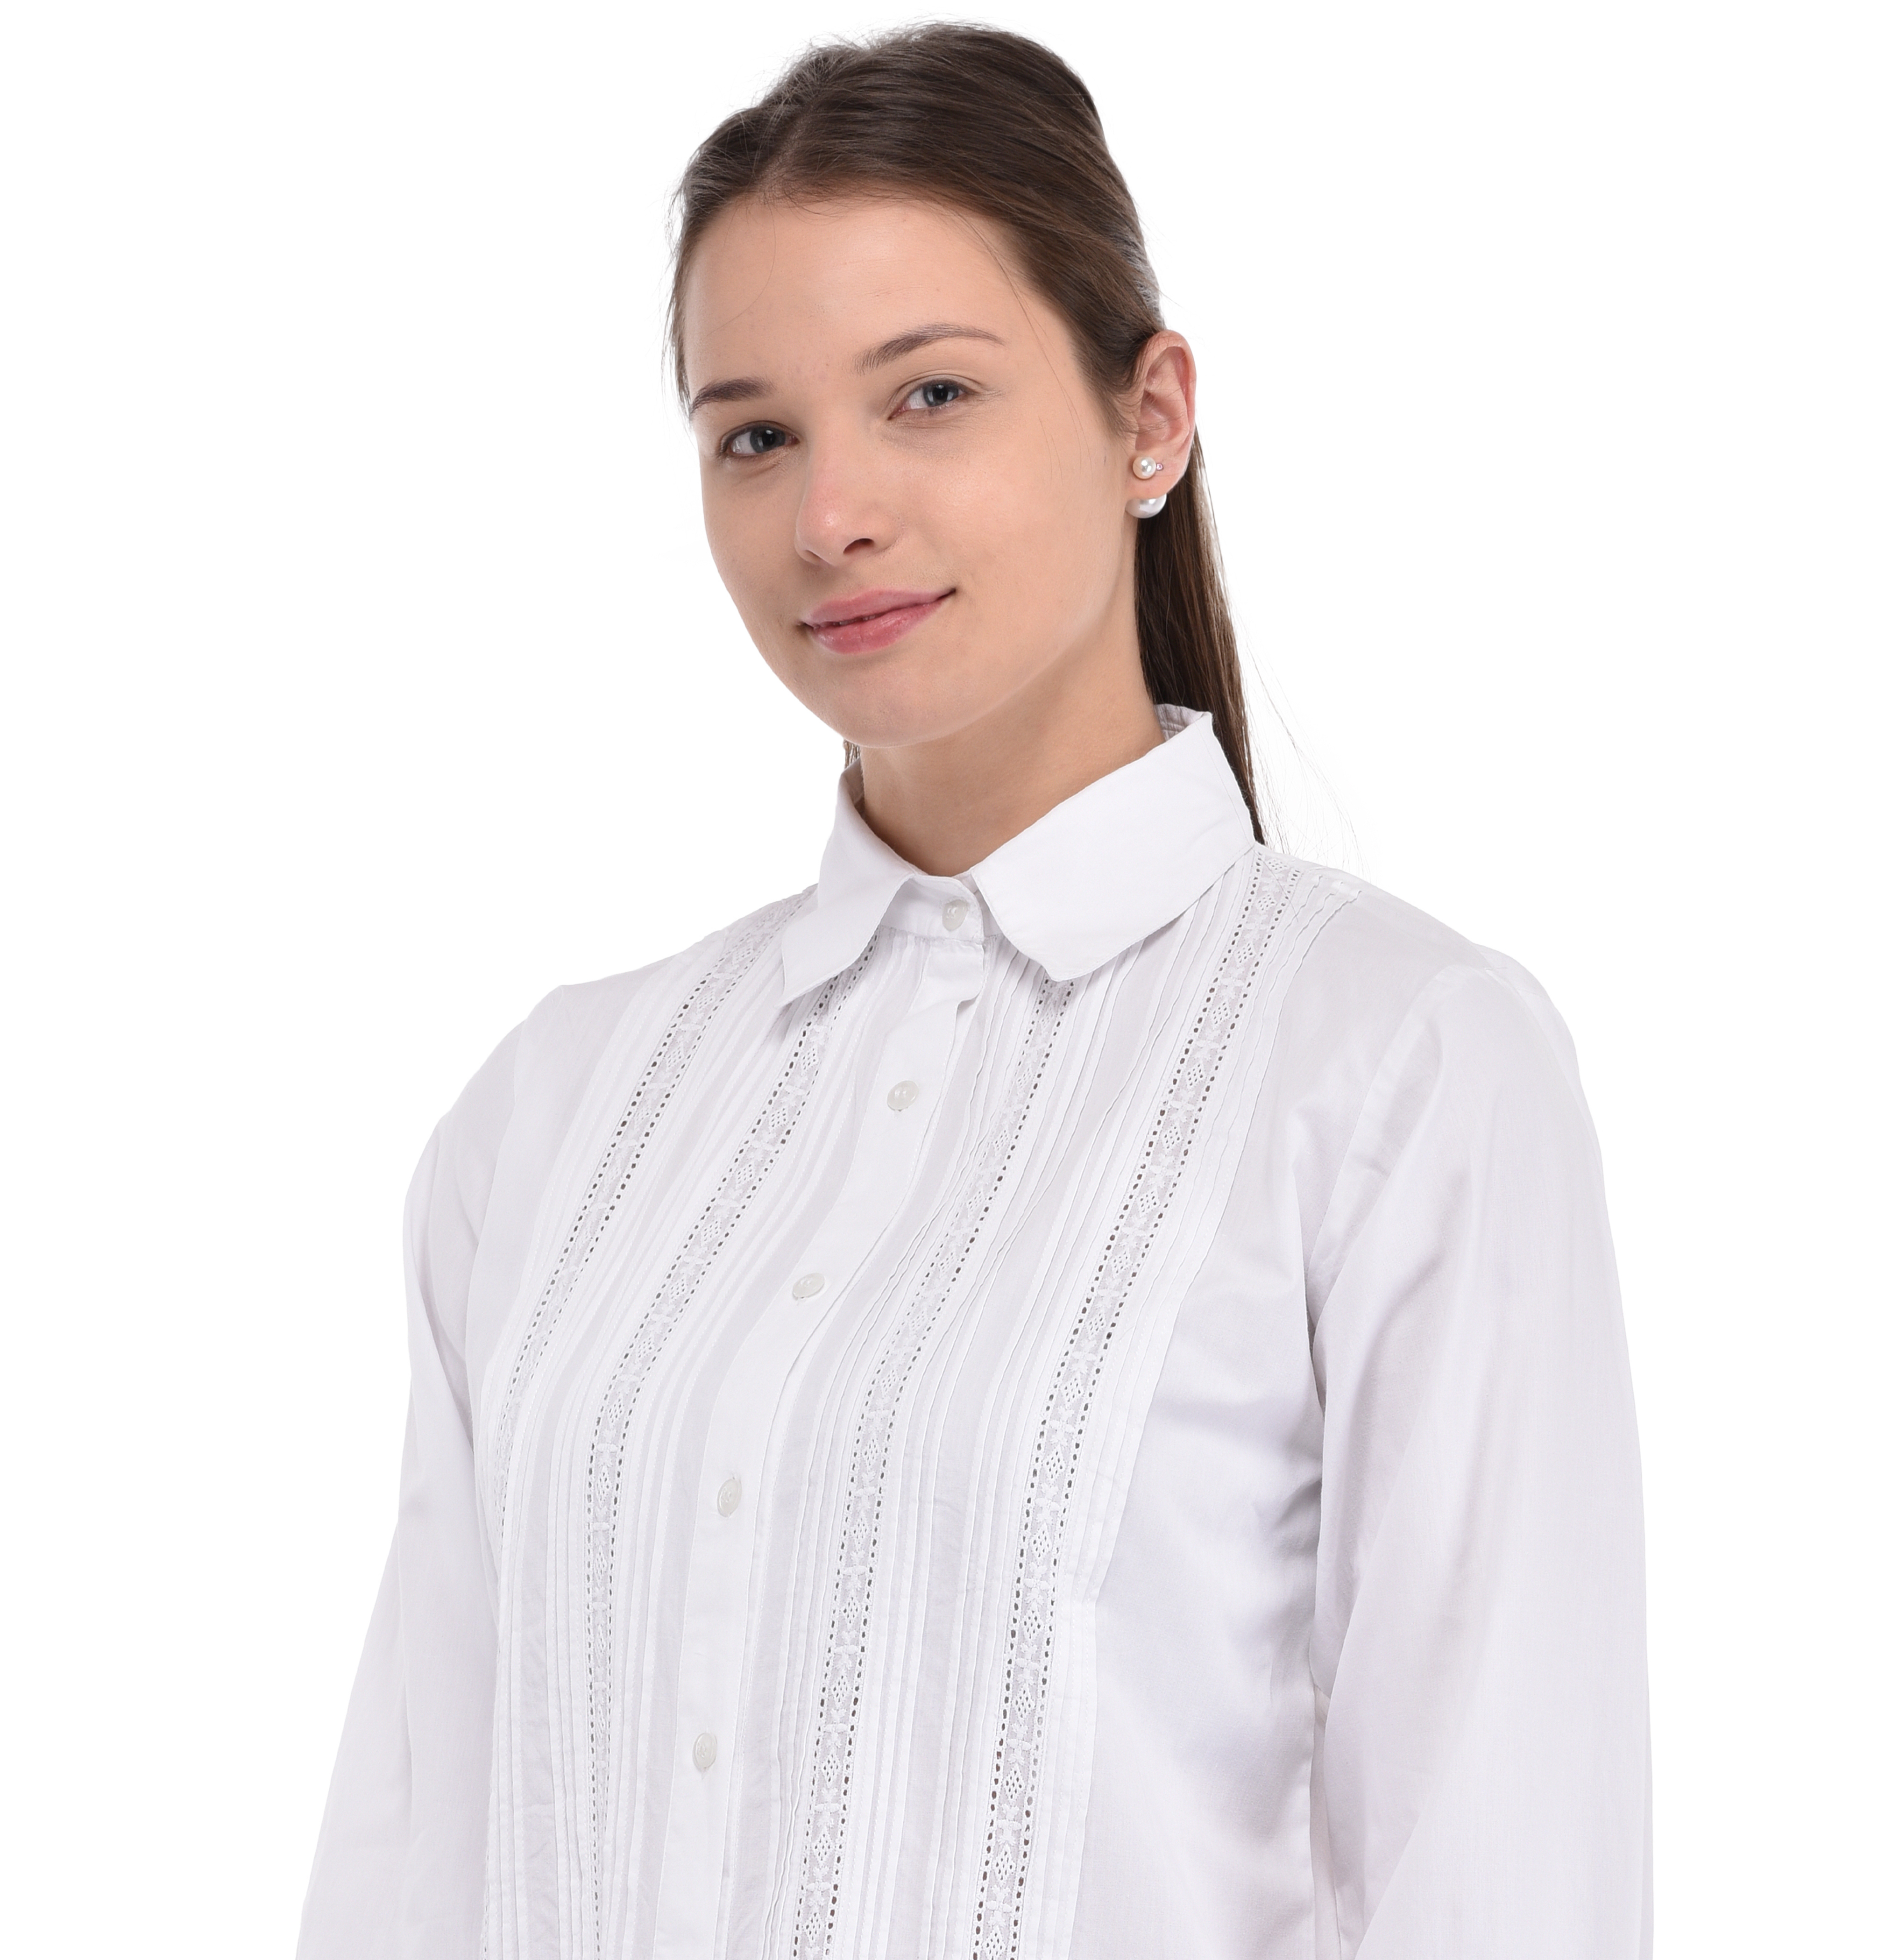 Cotton Lane White Crisp Cotton Shirt SH44-WT | COTTON LANE